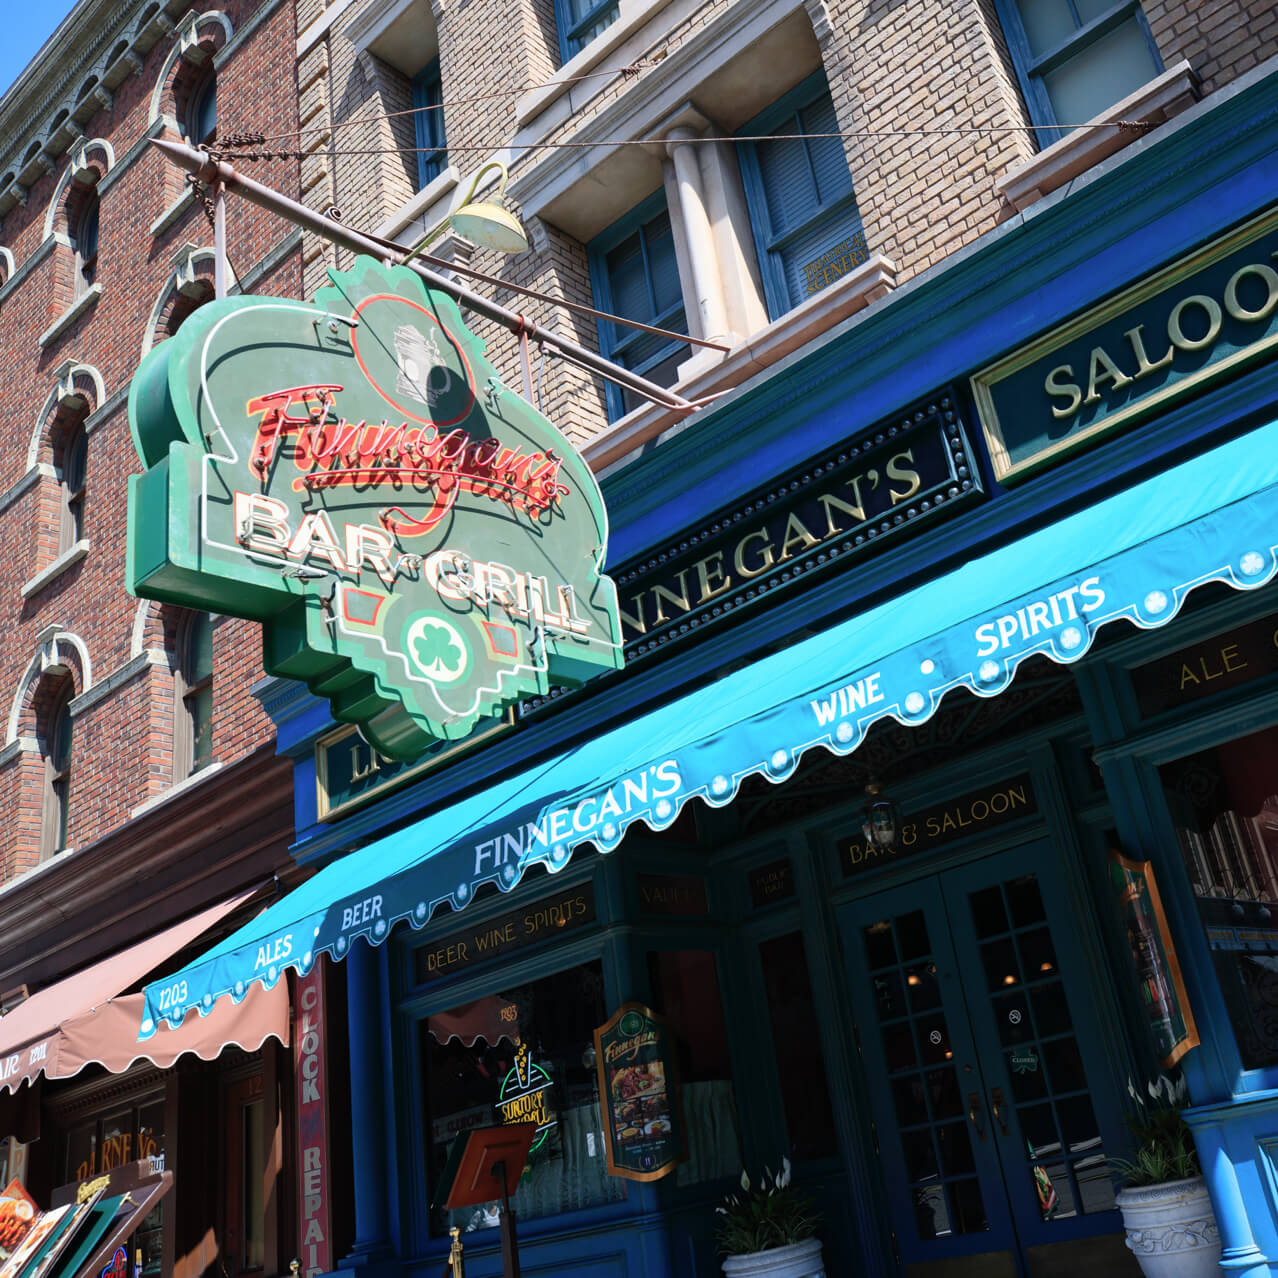 Finnegan's Bar & Grill (full-service) at Universal Studios Florida